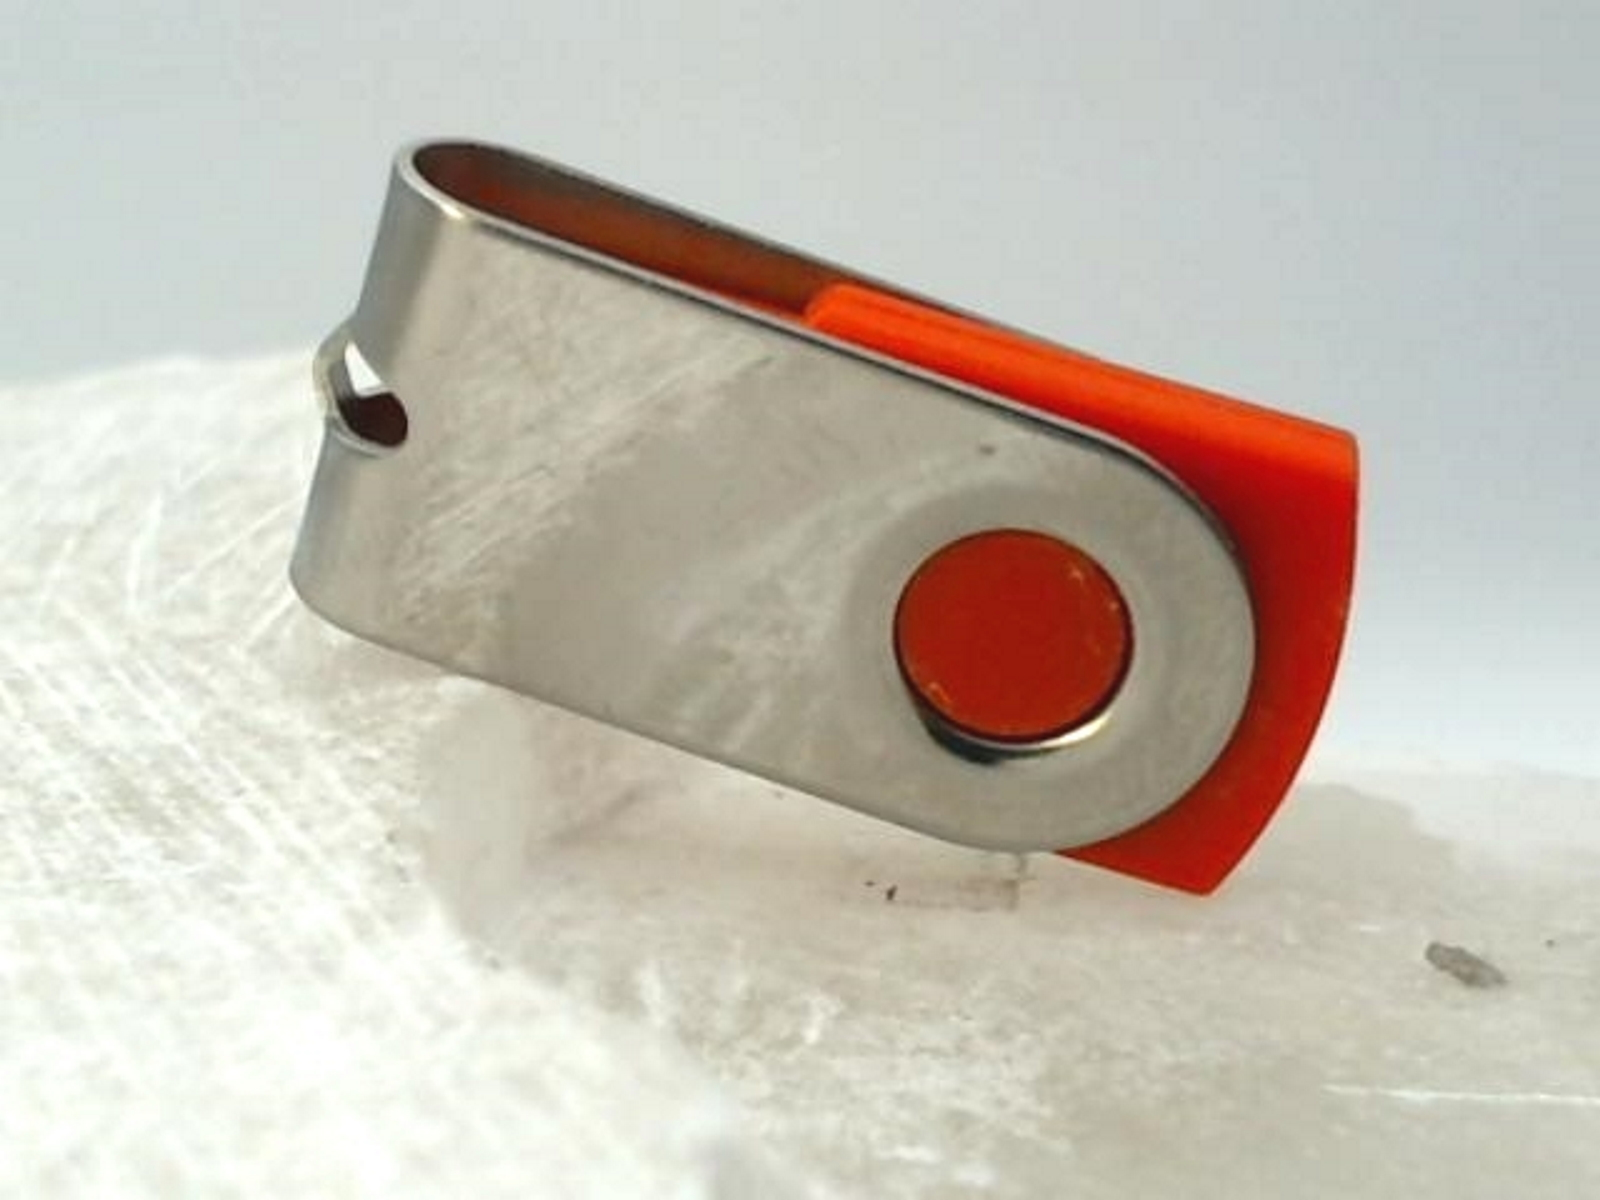 USB GERMANY ® 1 (Rot-Chrome, GB) USB-Stick MINI-SWIVEL